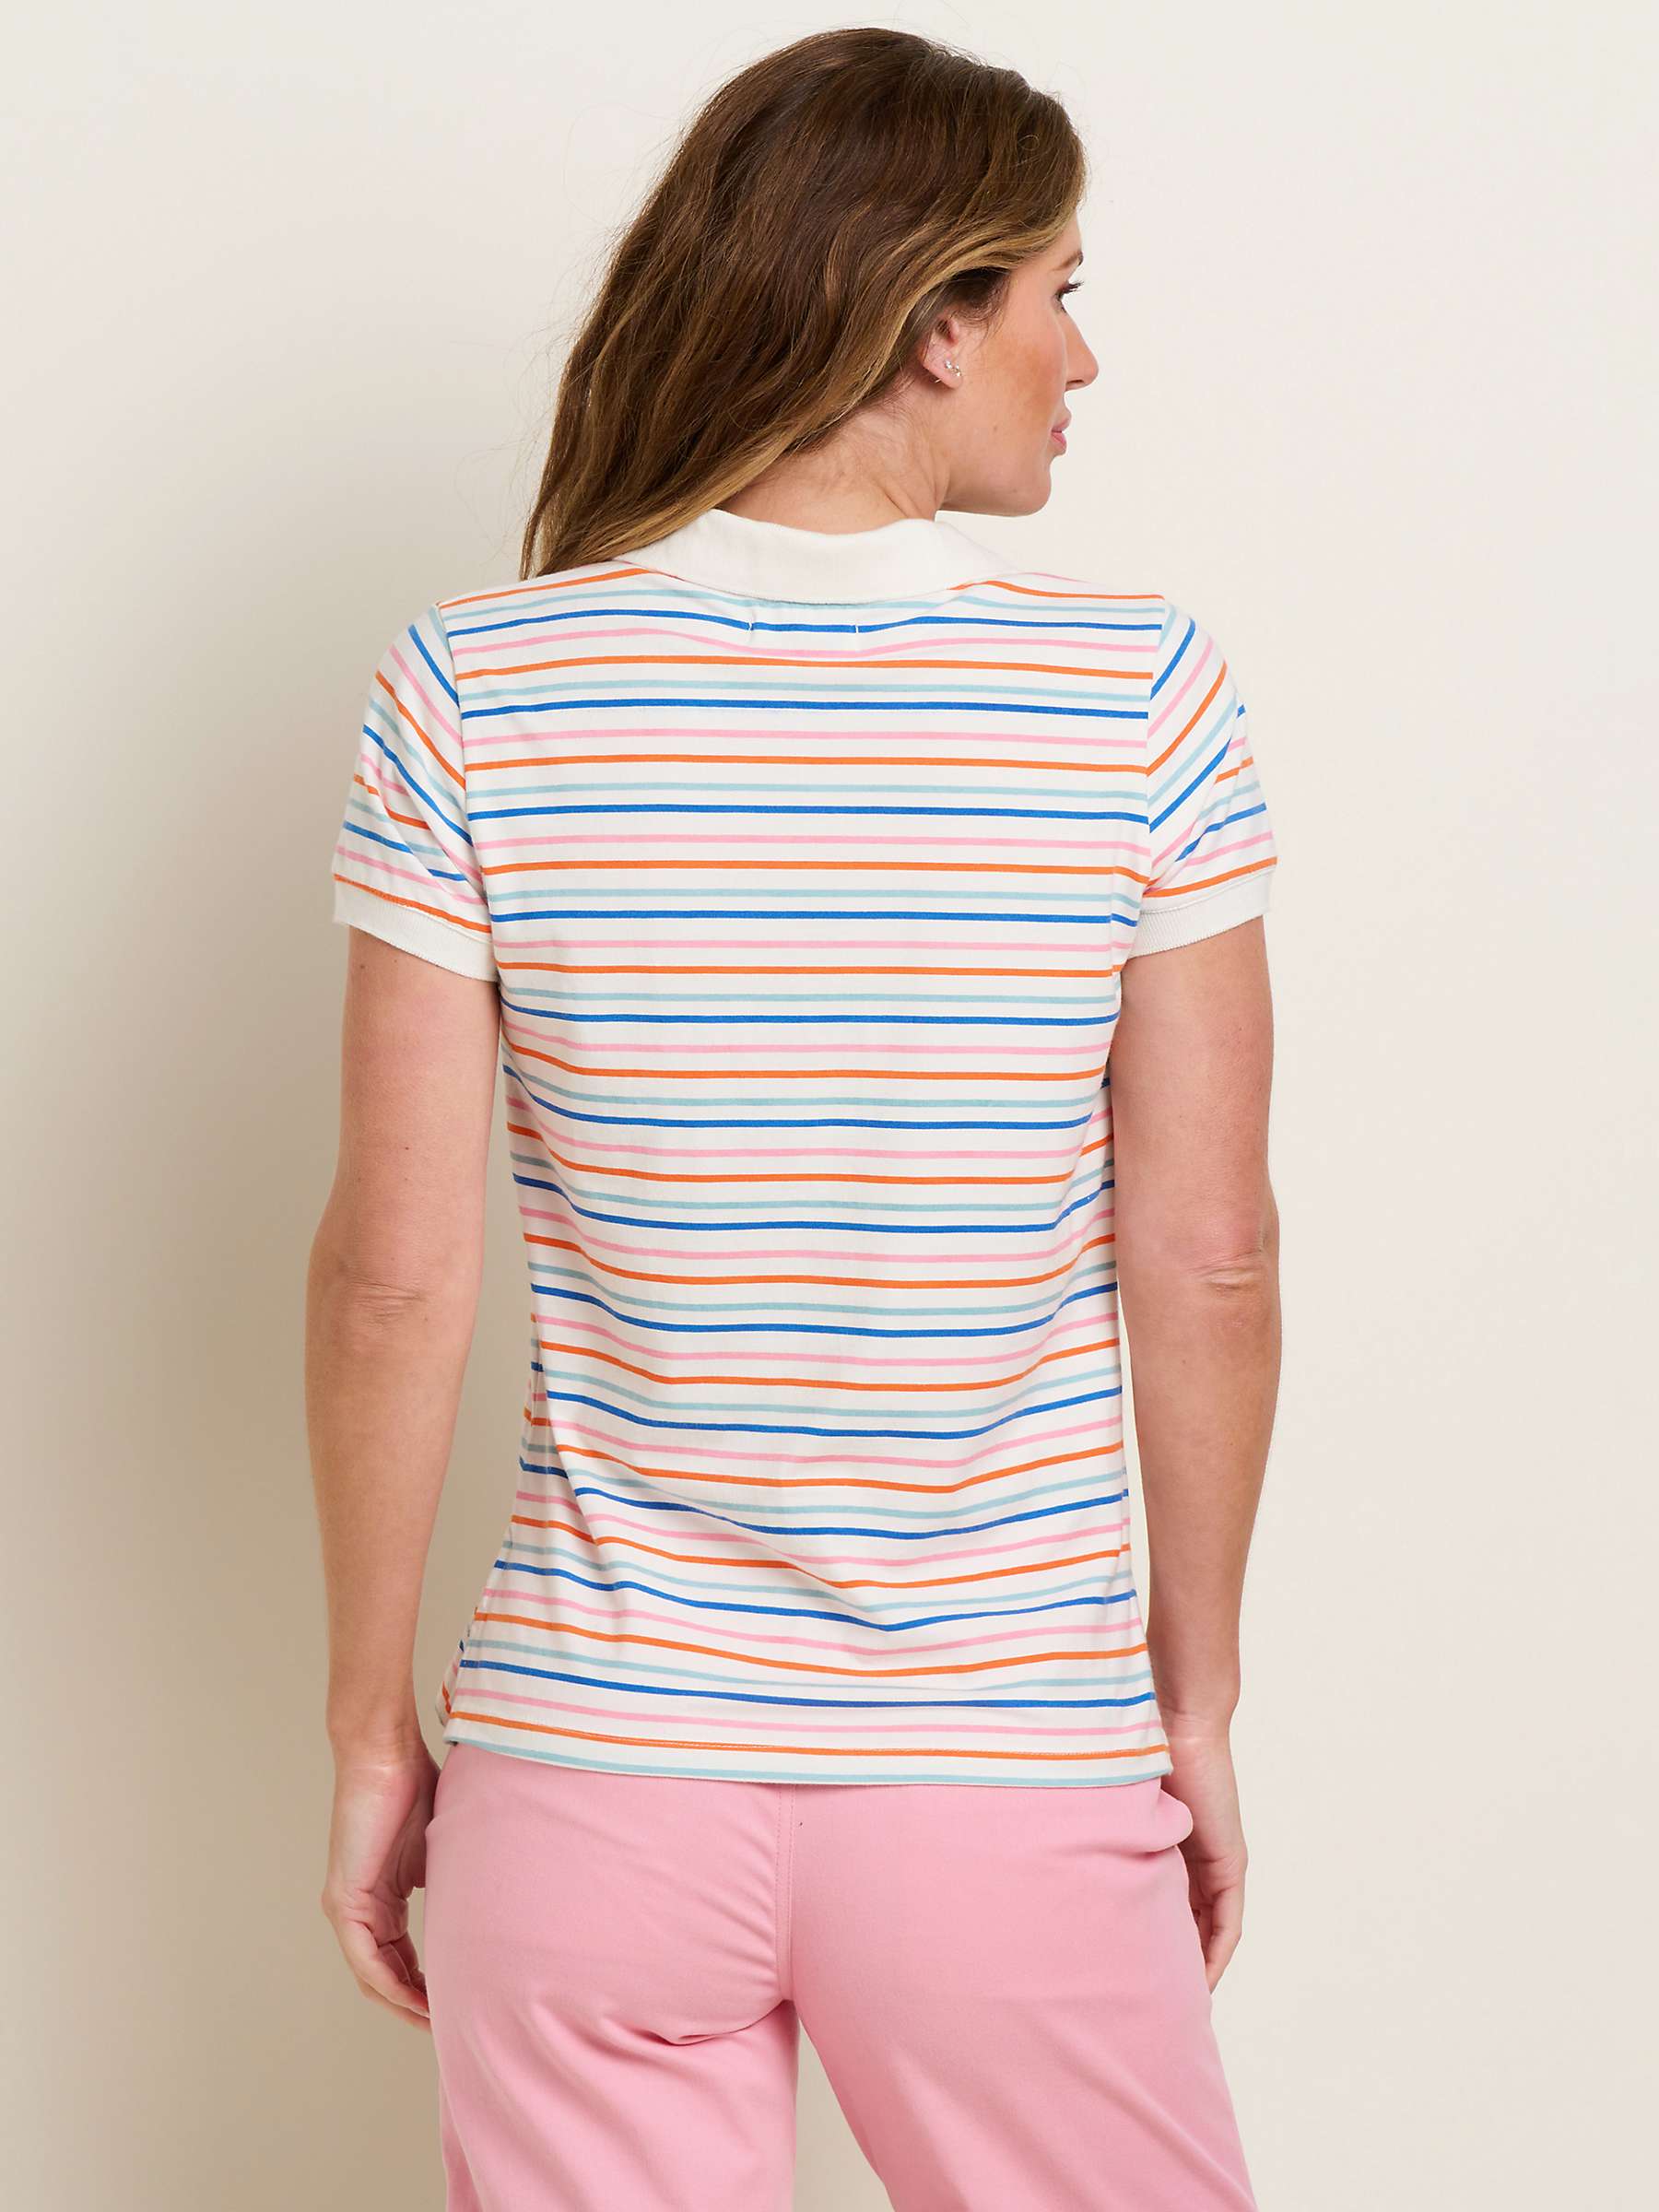 Buy Brakeburn Summer Polo T-shirt, Multi Online at johnlewis.com